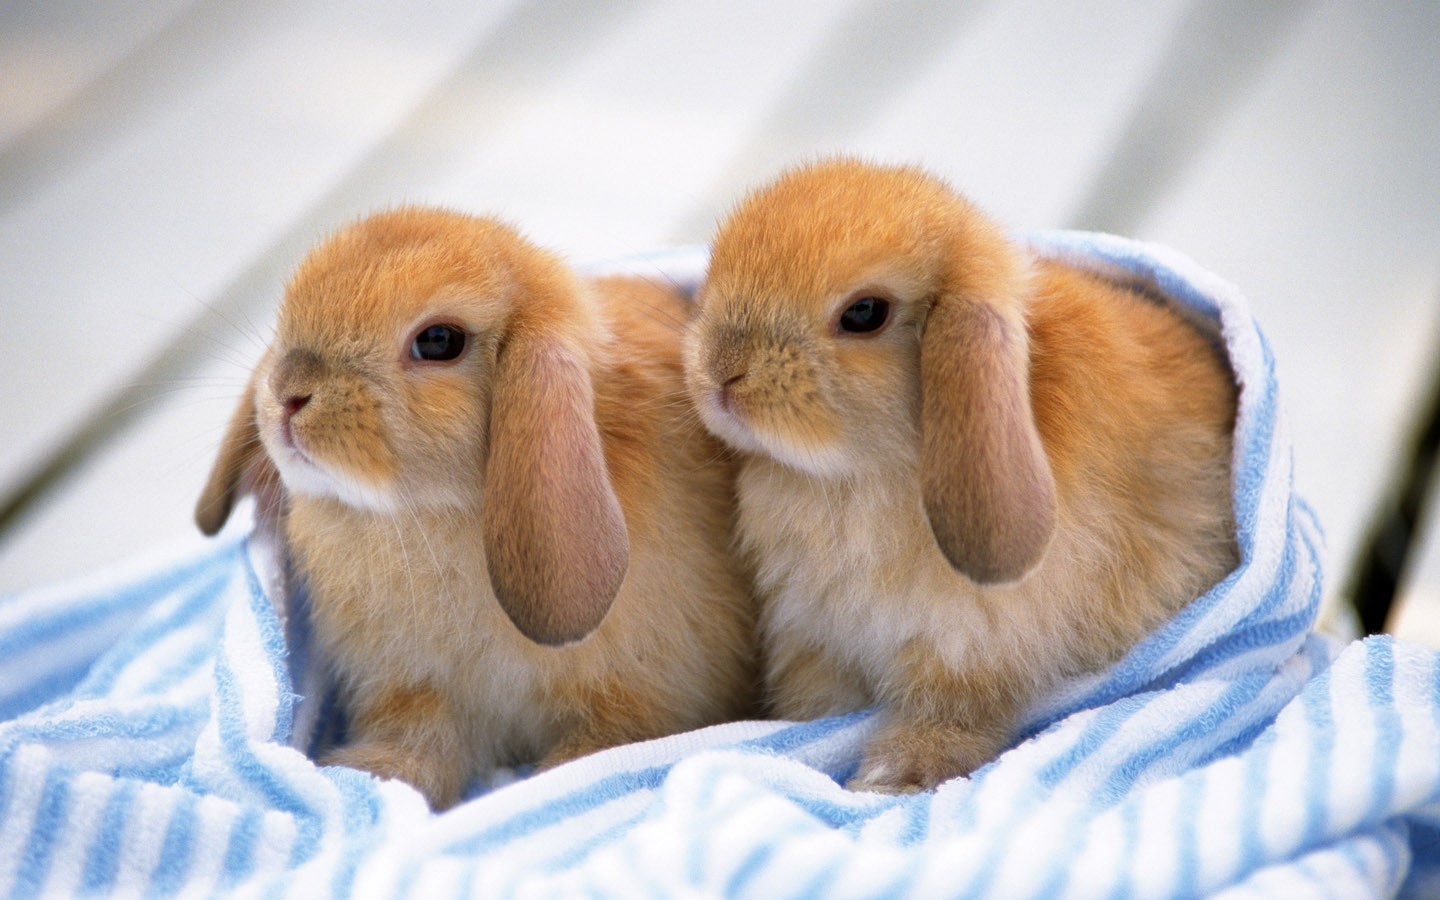 bunnies for sale near me